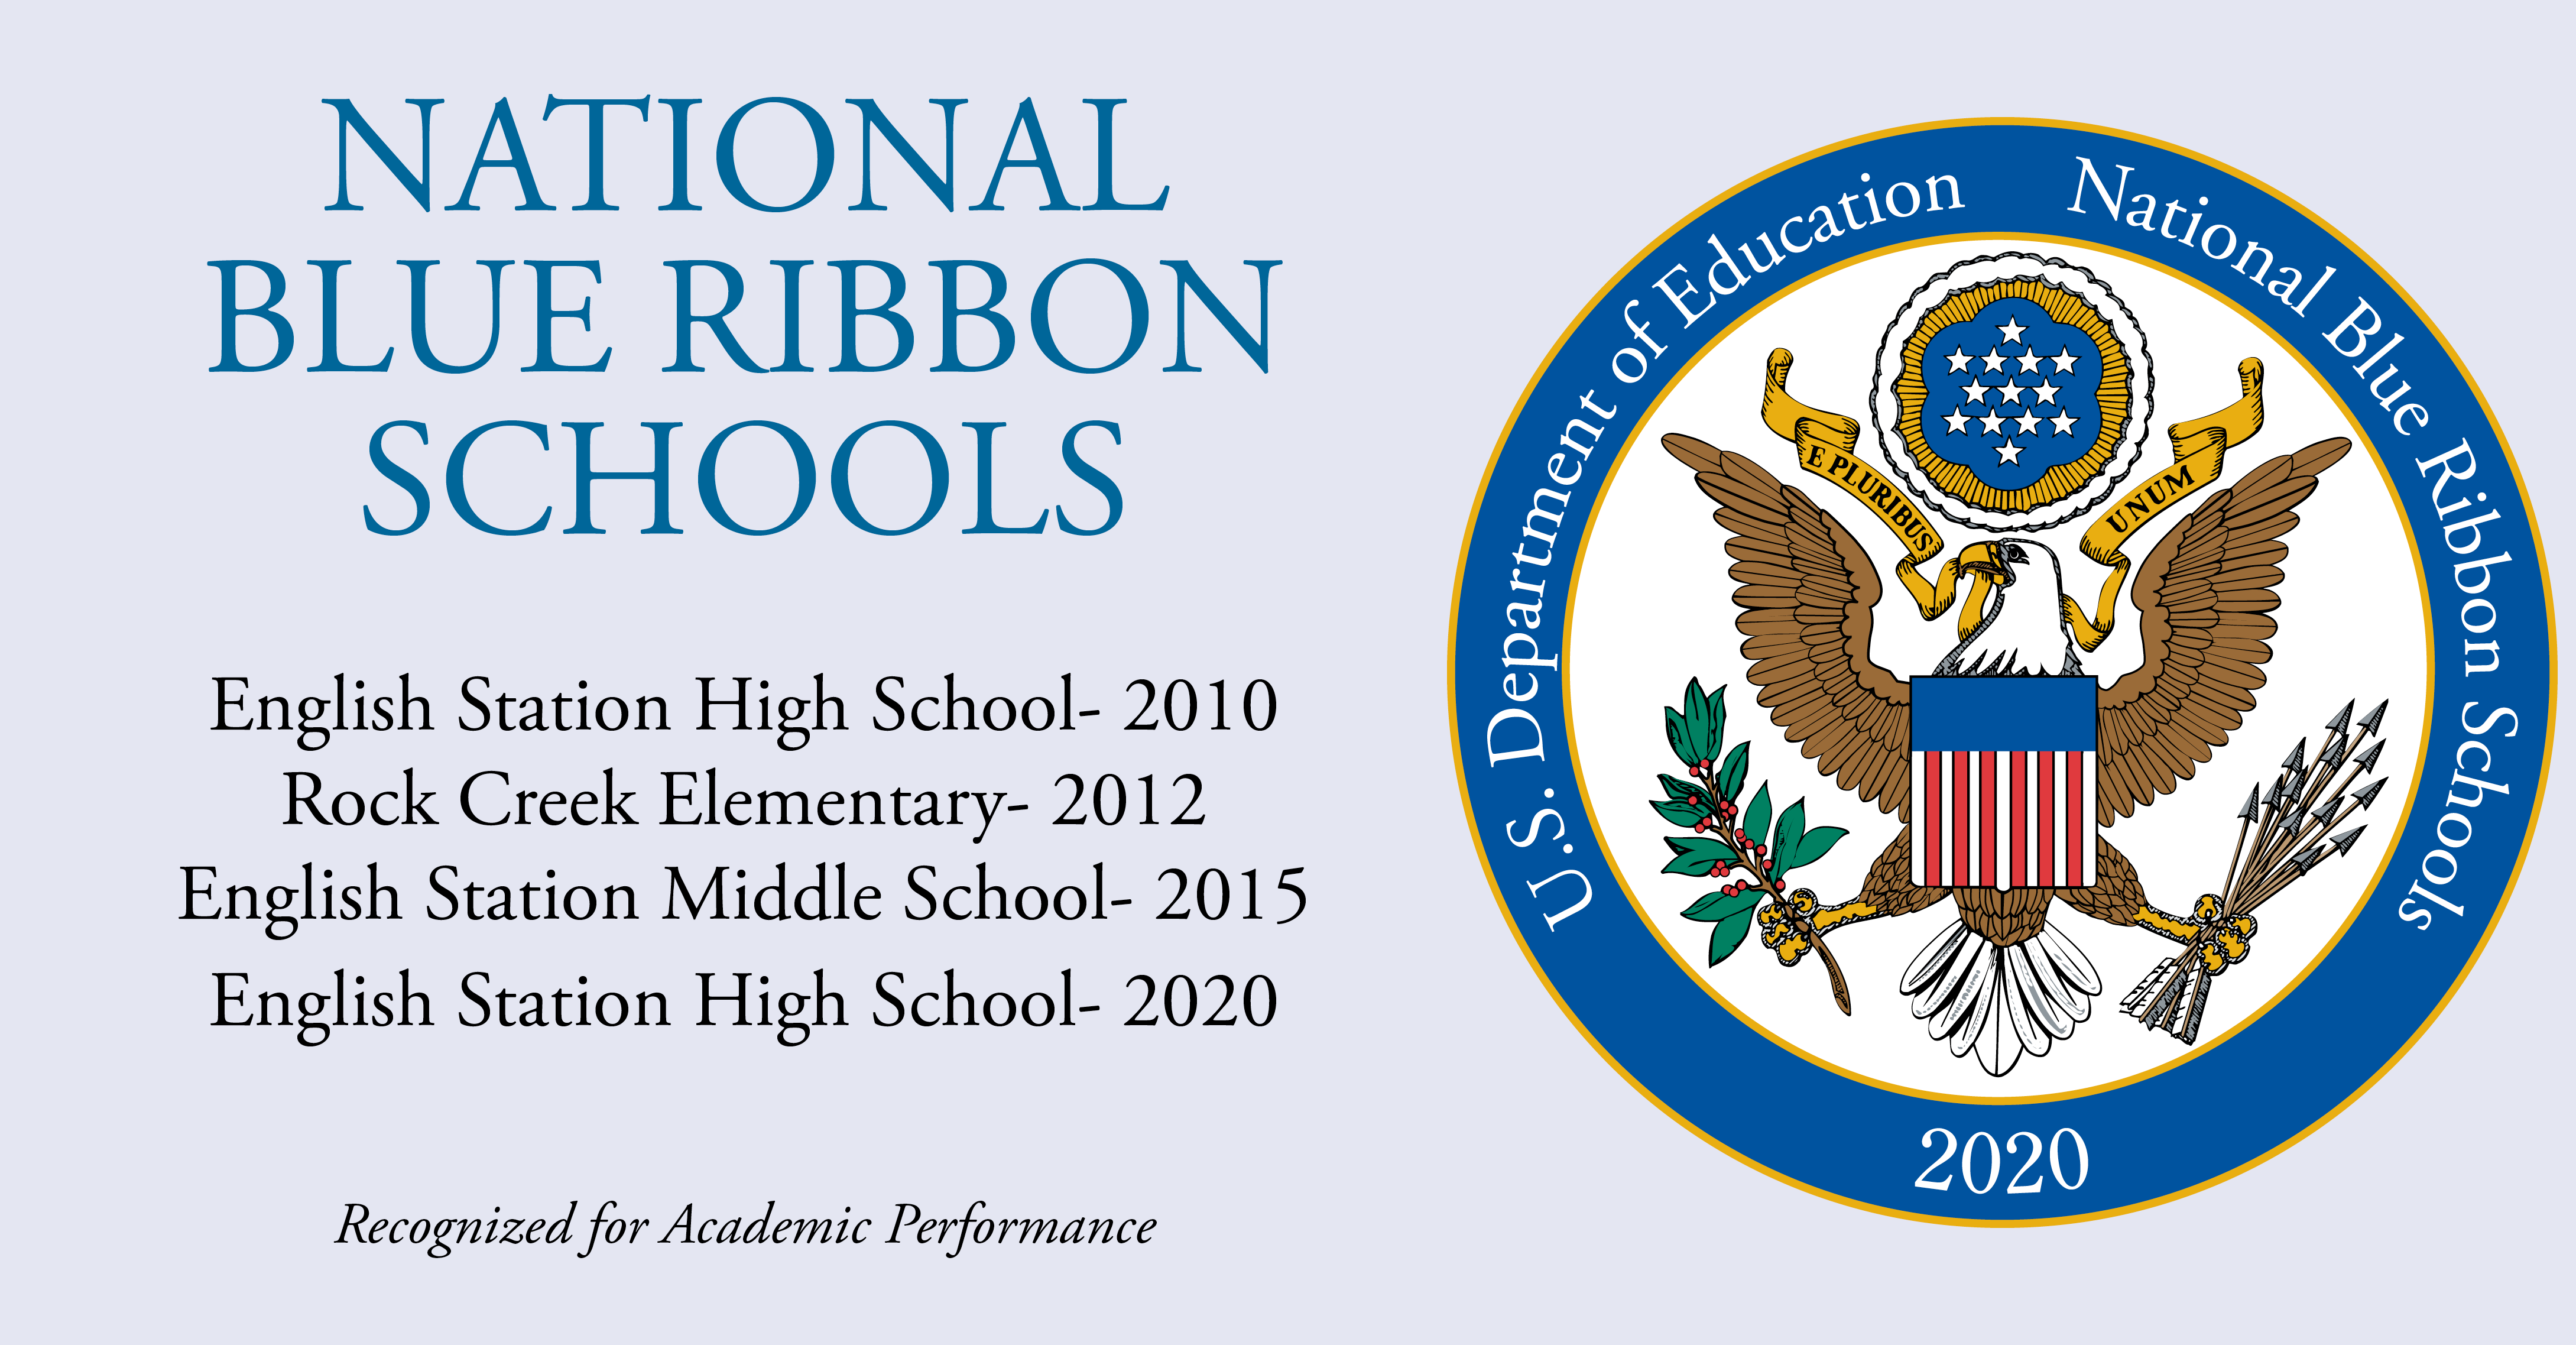 Christian Academy School System | Blue Ribbon Schools